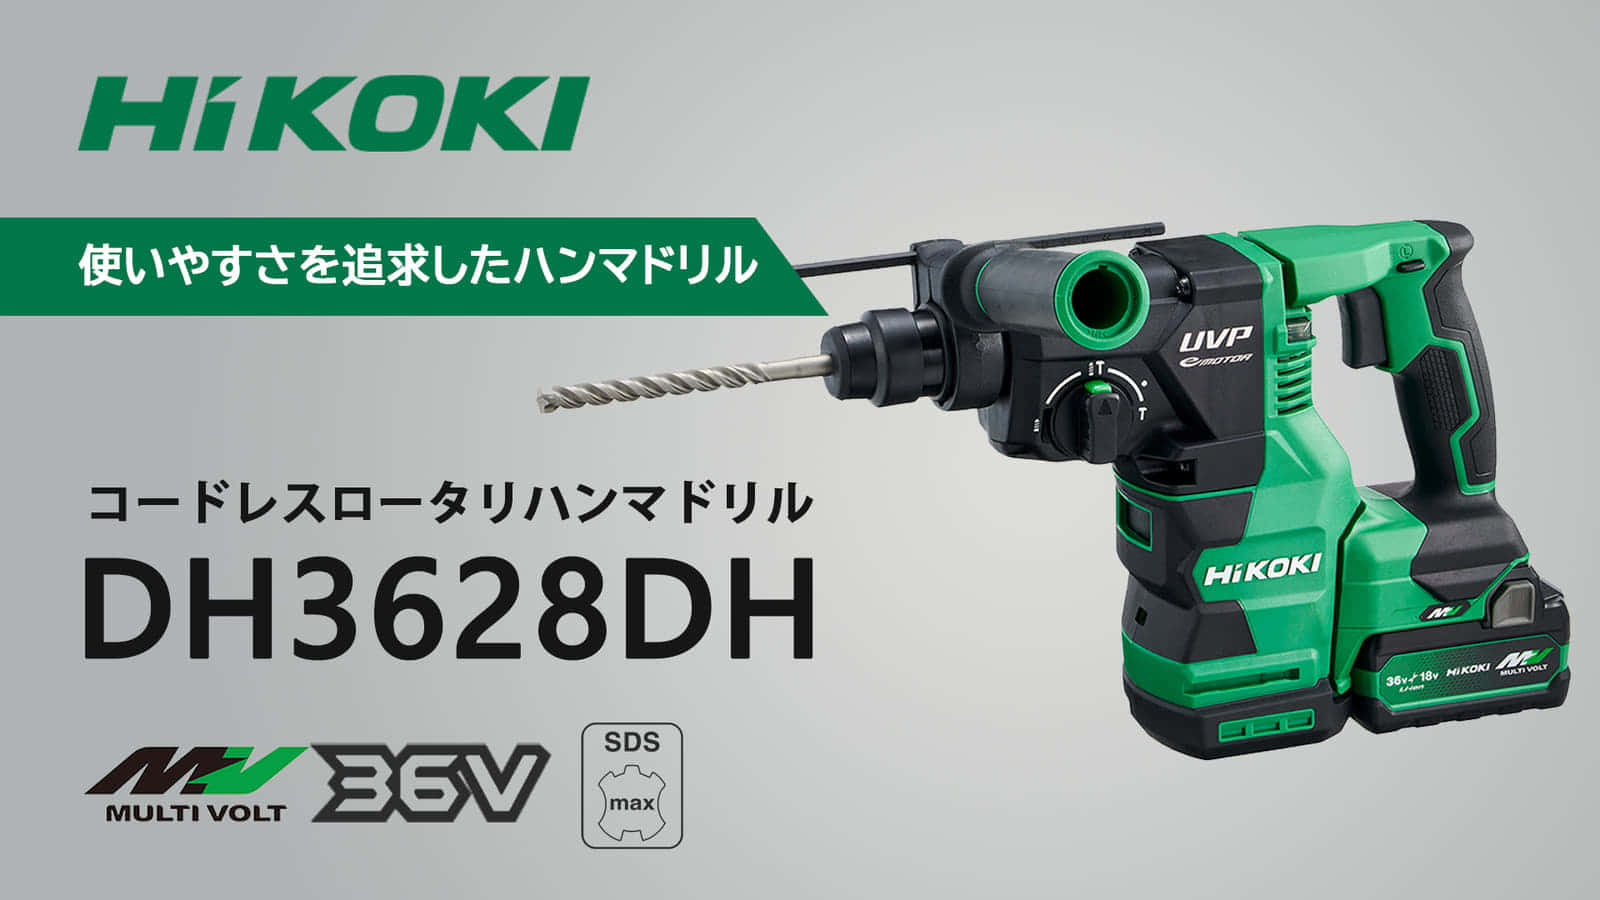 HiKOKI(ハイコーキ) ロータリーハンマドリル ACブラシレスモーター搭載 DH28PEC